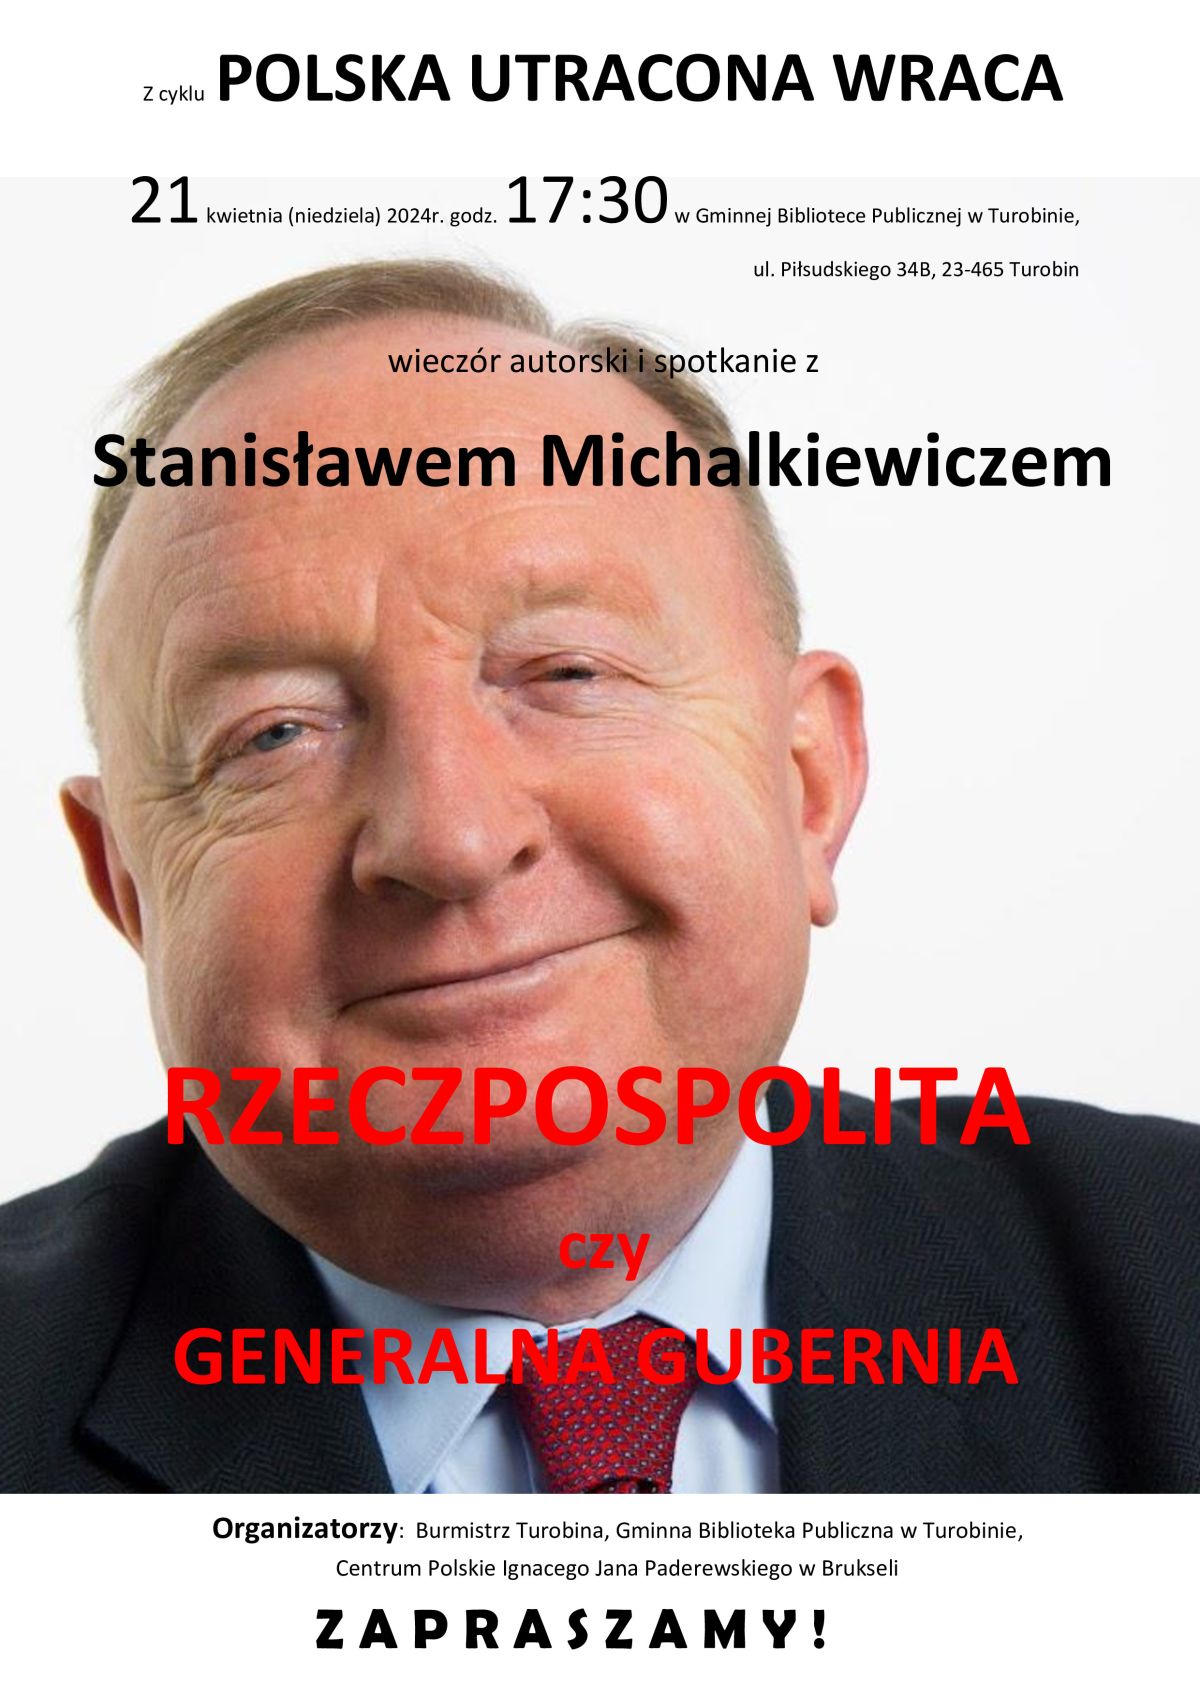 Zaproszenie na spotkanie ze Stanisławem Michalkiewiczem